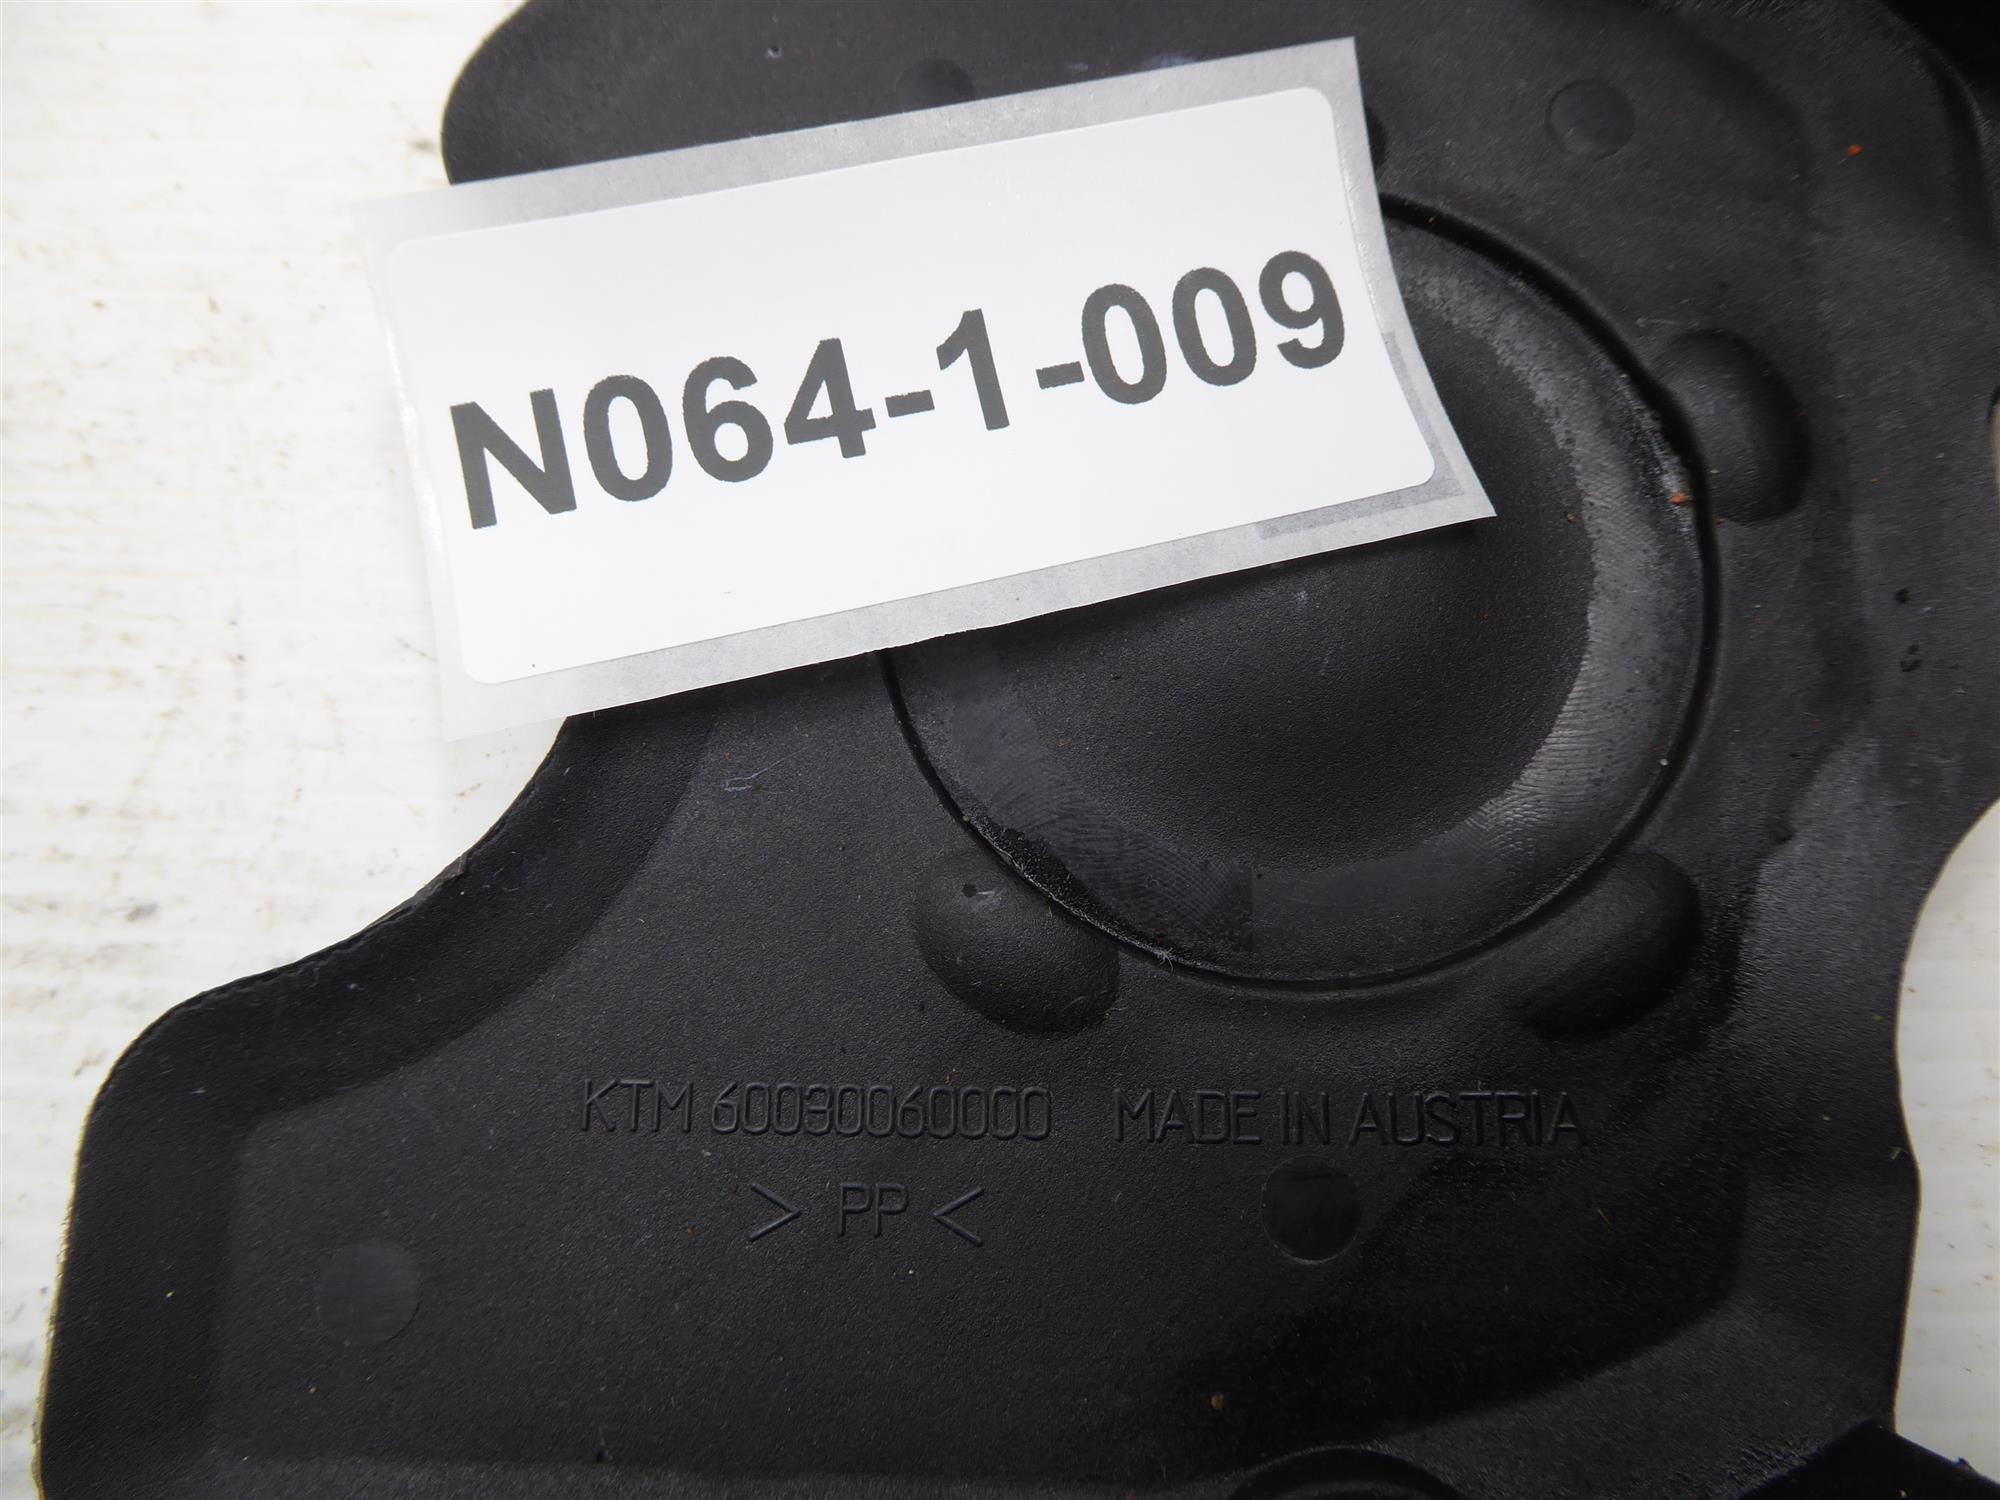 KTM 990 Supermoto Kettenschutz Kettenabdeckung 60030060000